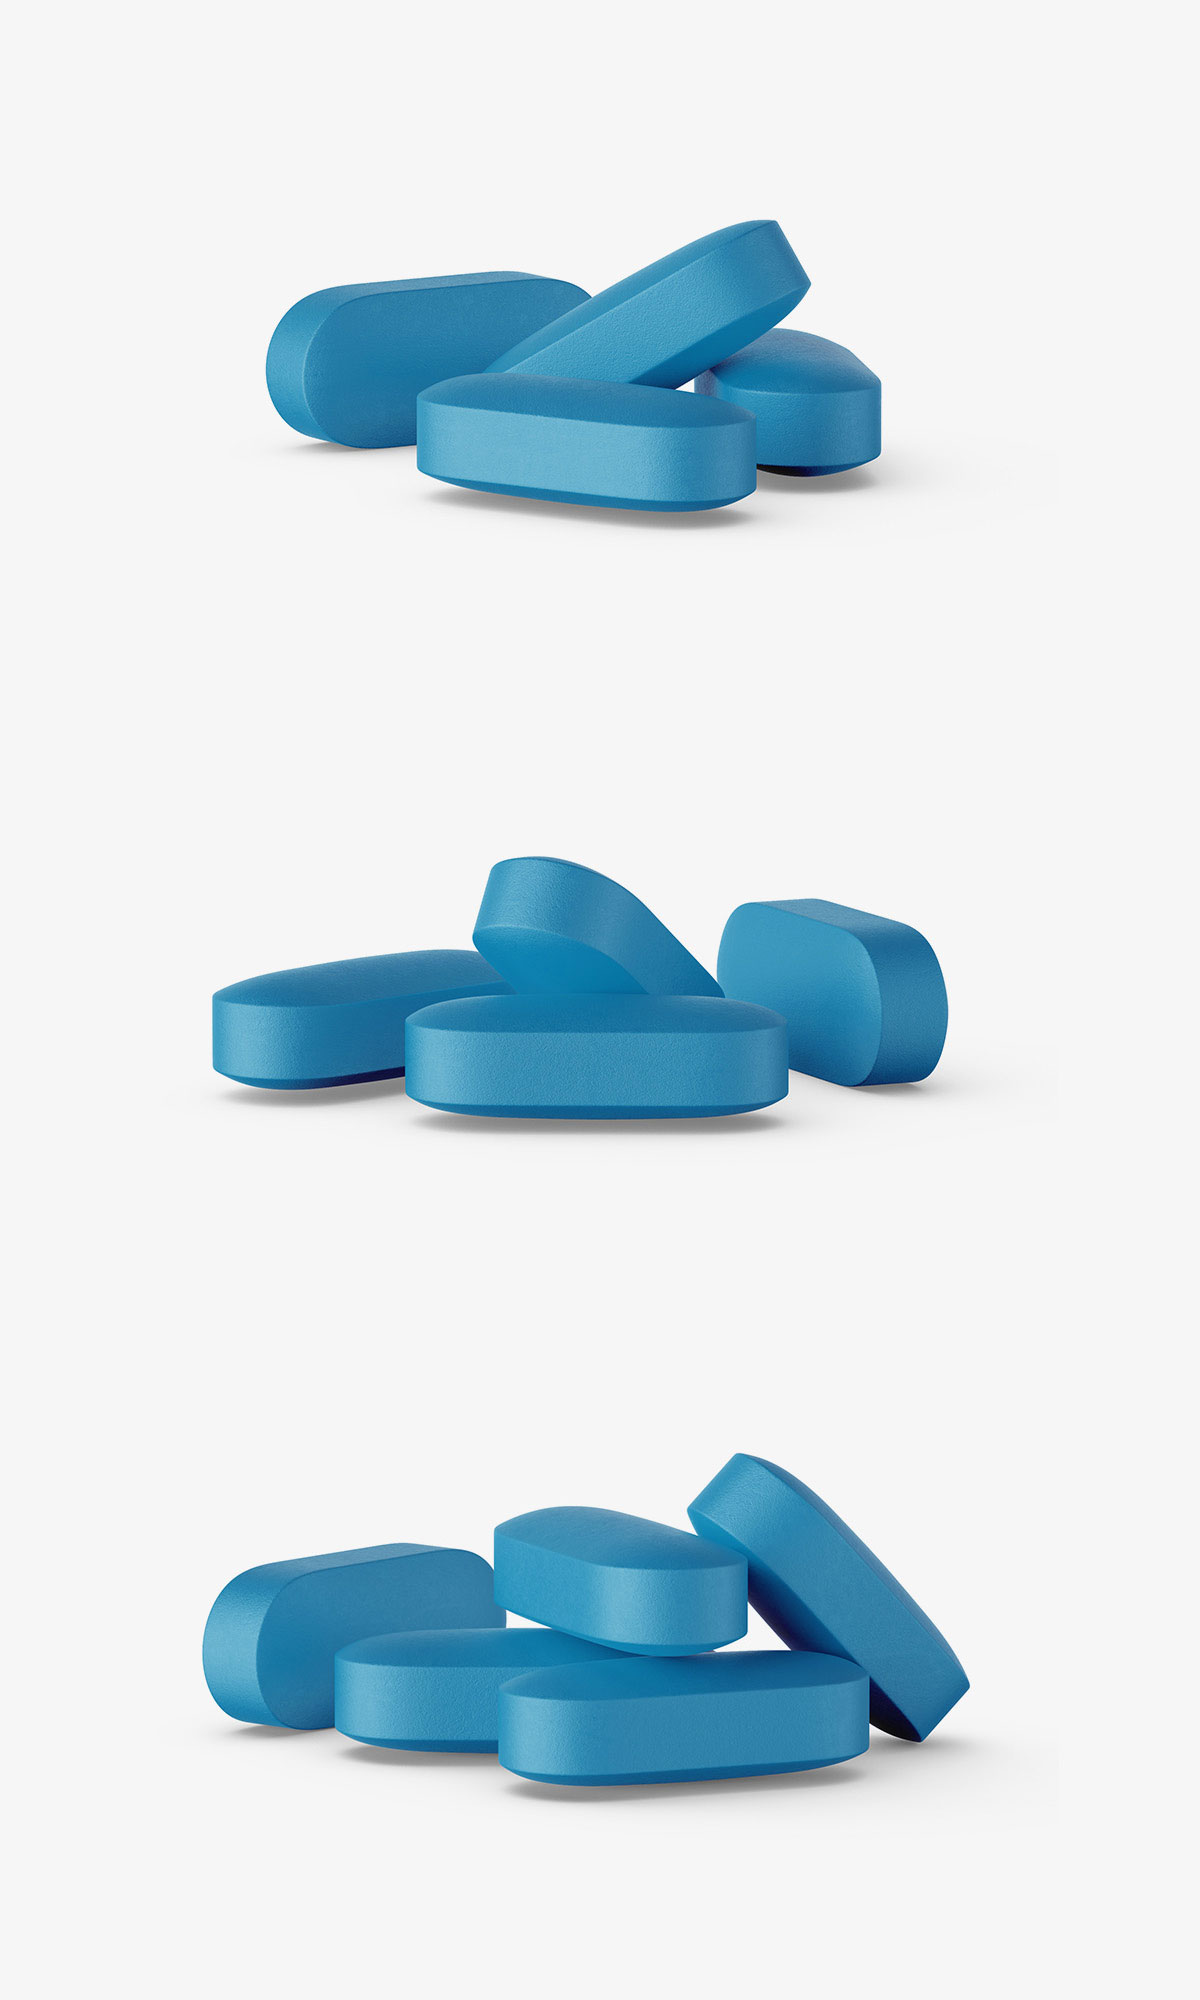 常规药片贴图模板PSD样机模型pills mockup